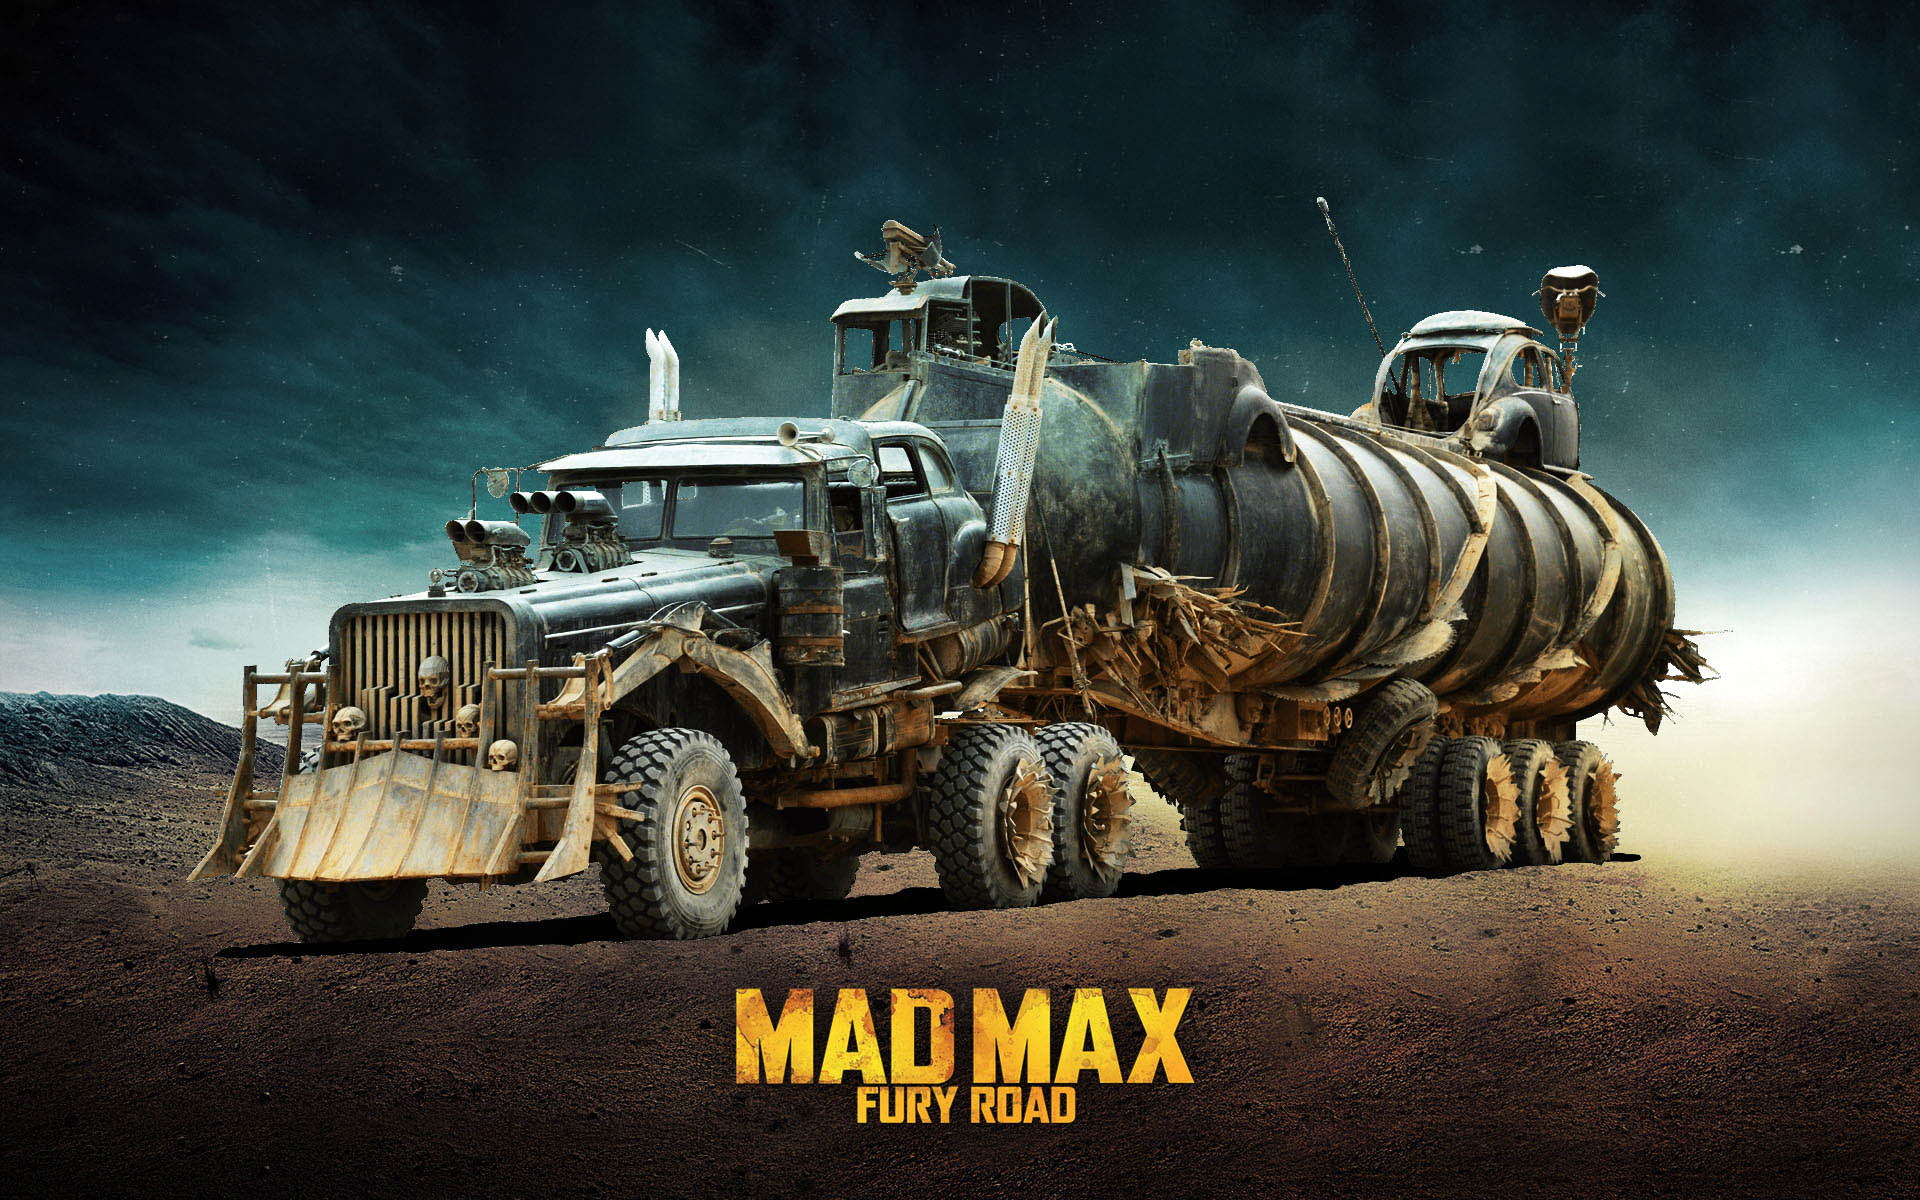 mad max wallpaper hd,veicolo,manifesto,gioco per pc,fotografia,pubblicità